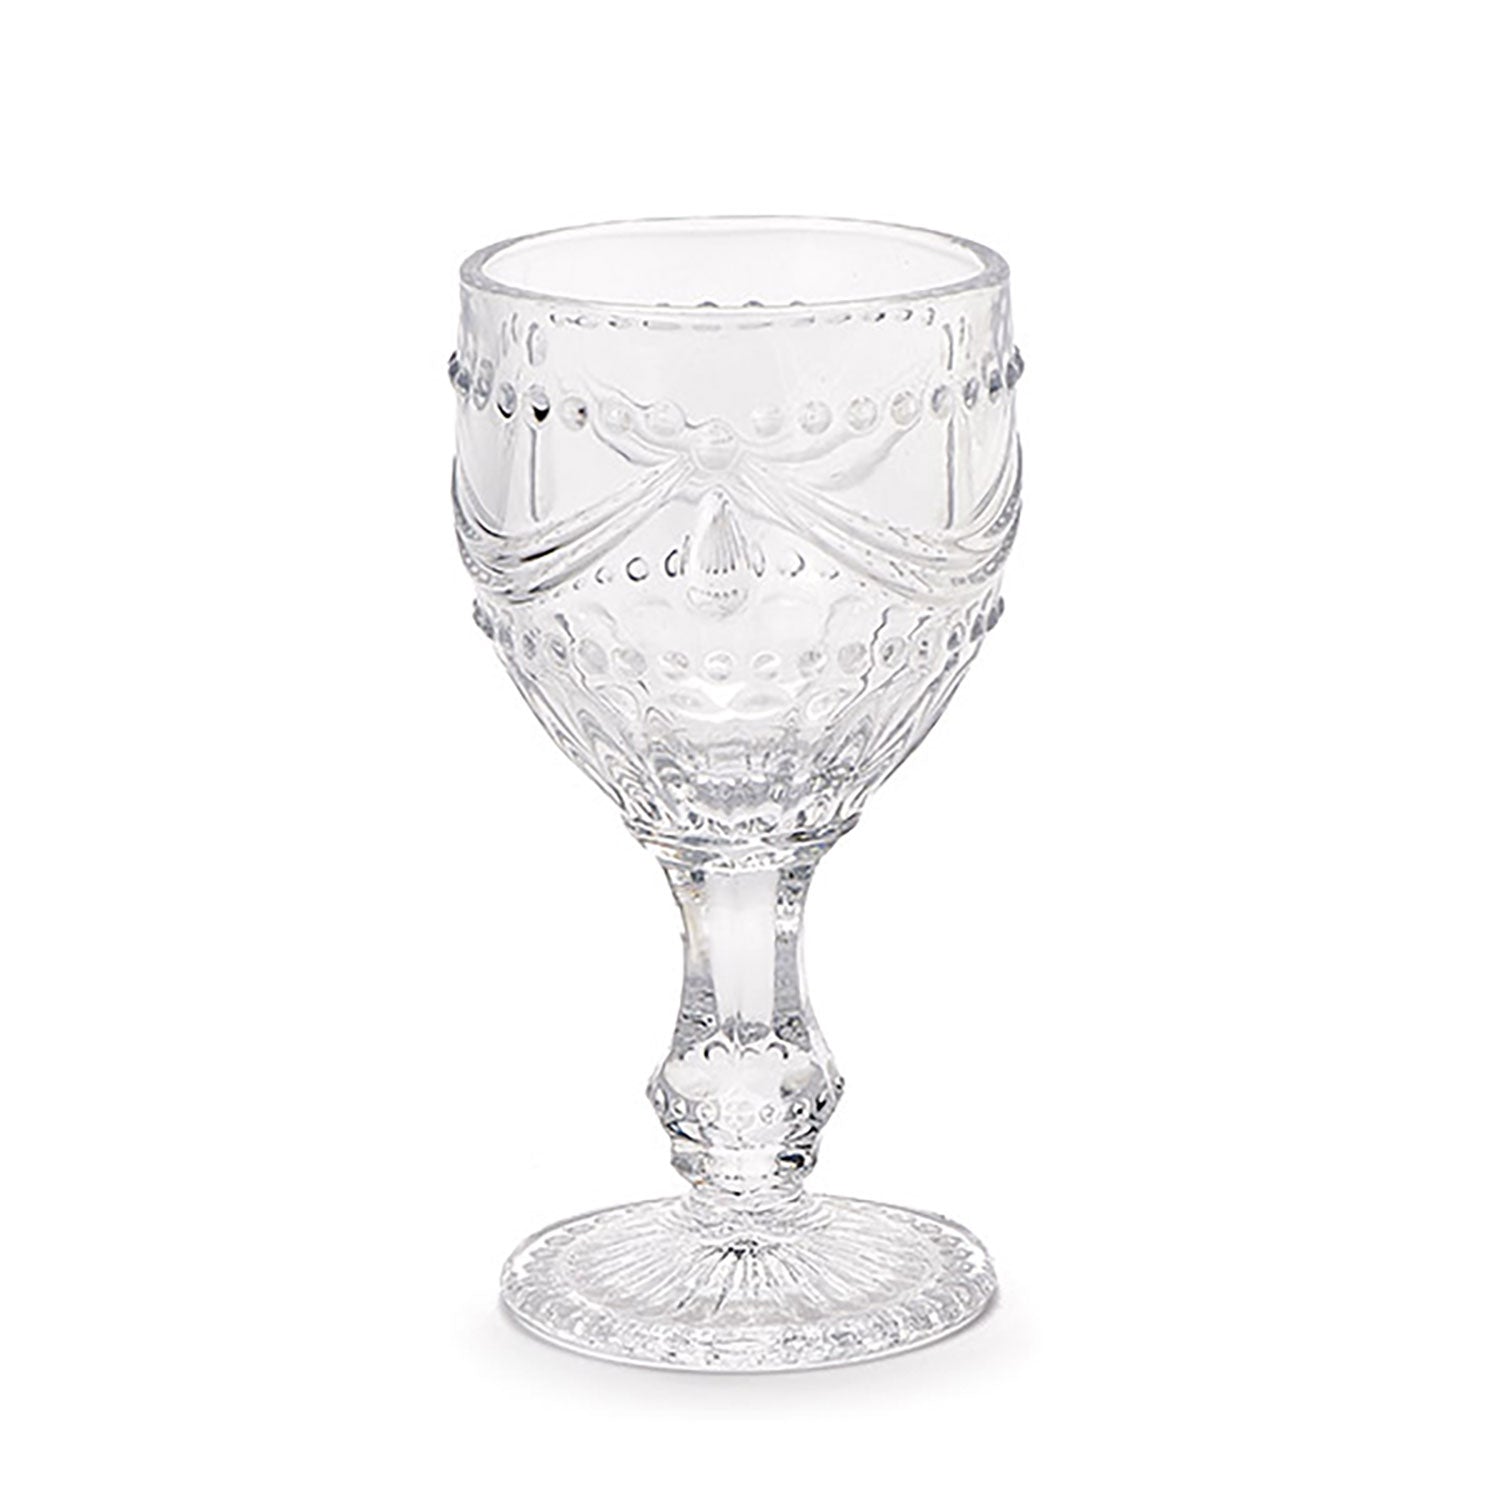 Calici da vino bicchieri Nuvole di Stoffa Shabby chic in vetro 6pz h14,5cm 5287